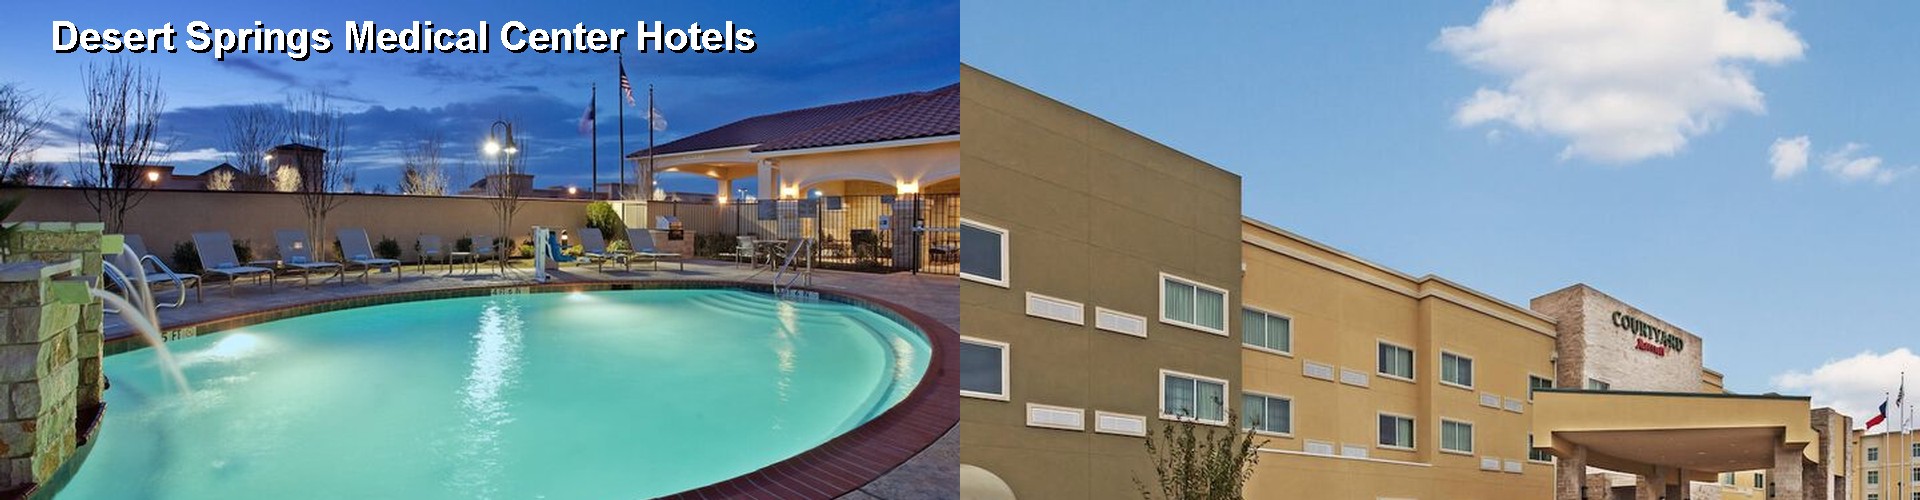 5 Best Hotels near Desert Springs Medical Center